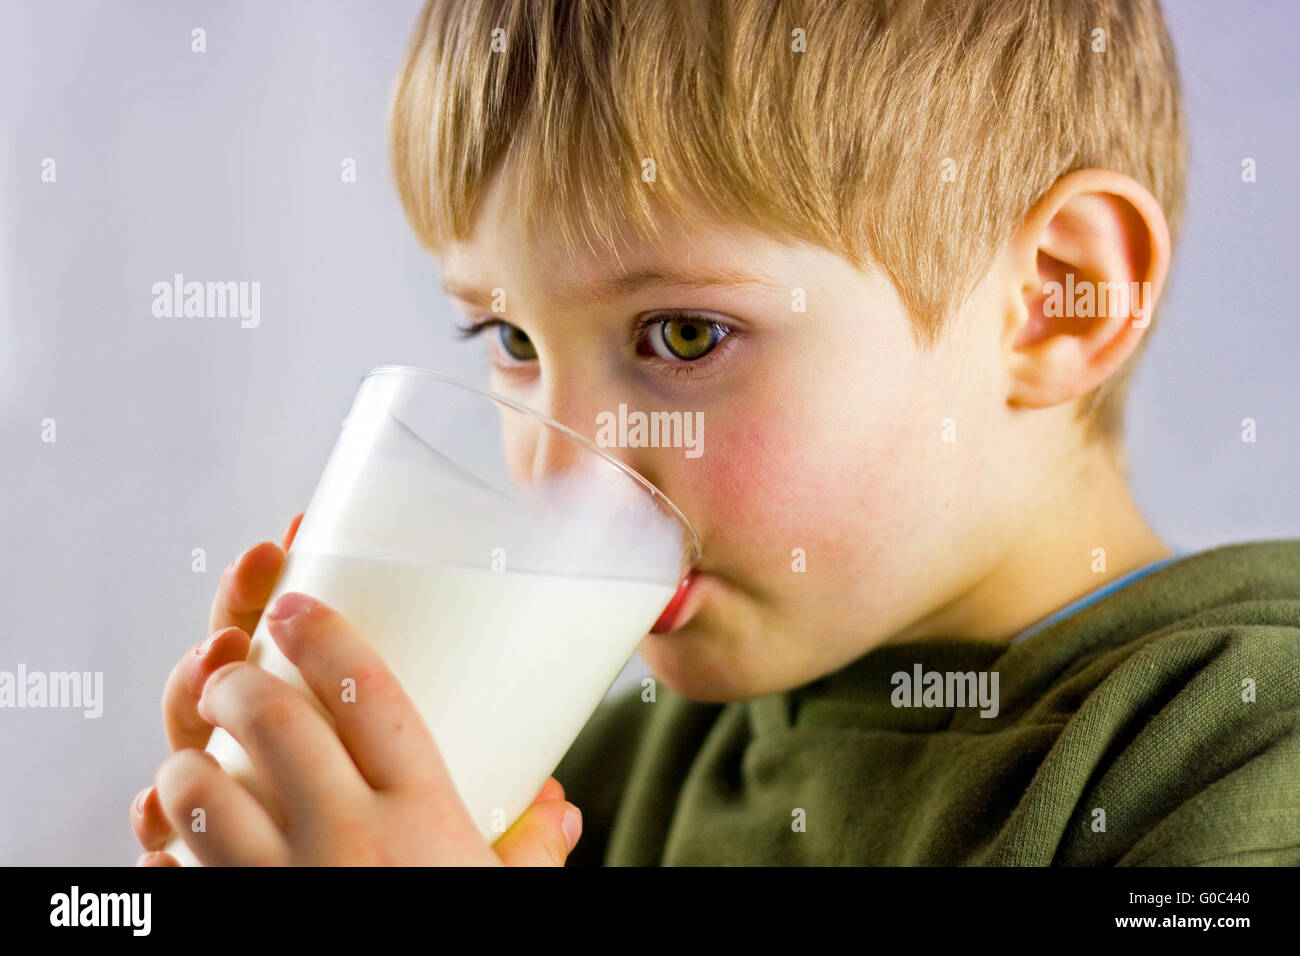 child drinking milk Stock Photo